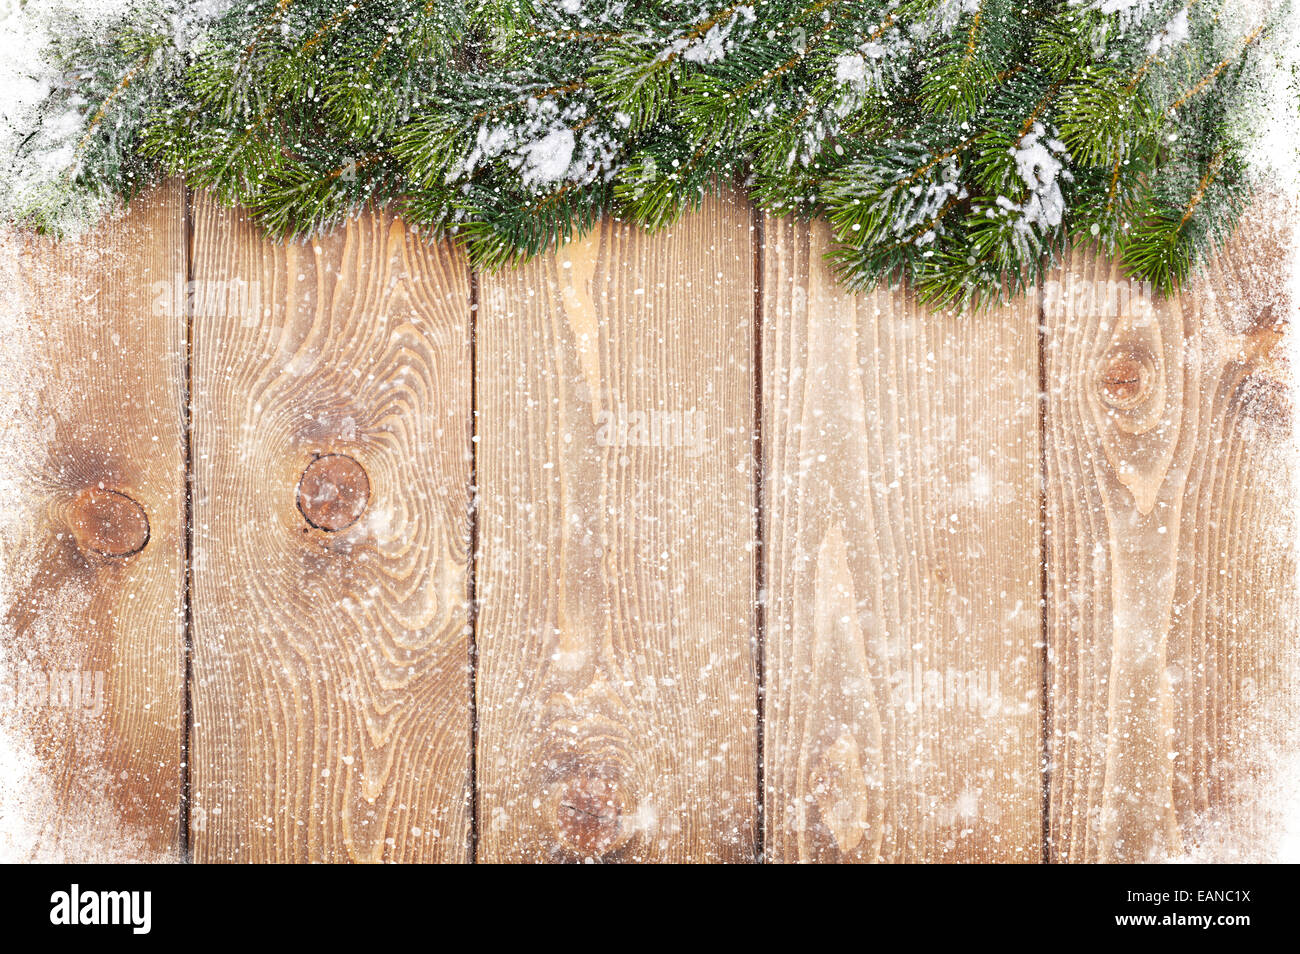 Textura de madera vieja con nieve y firtree Christmas background Foto de stock